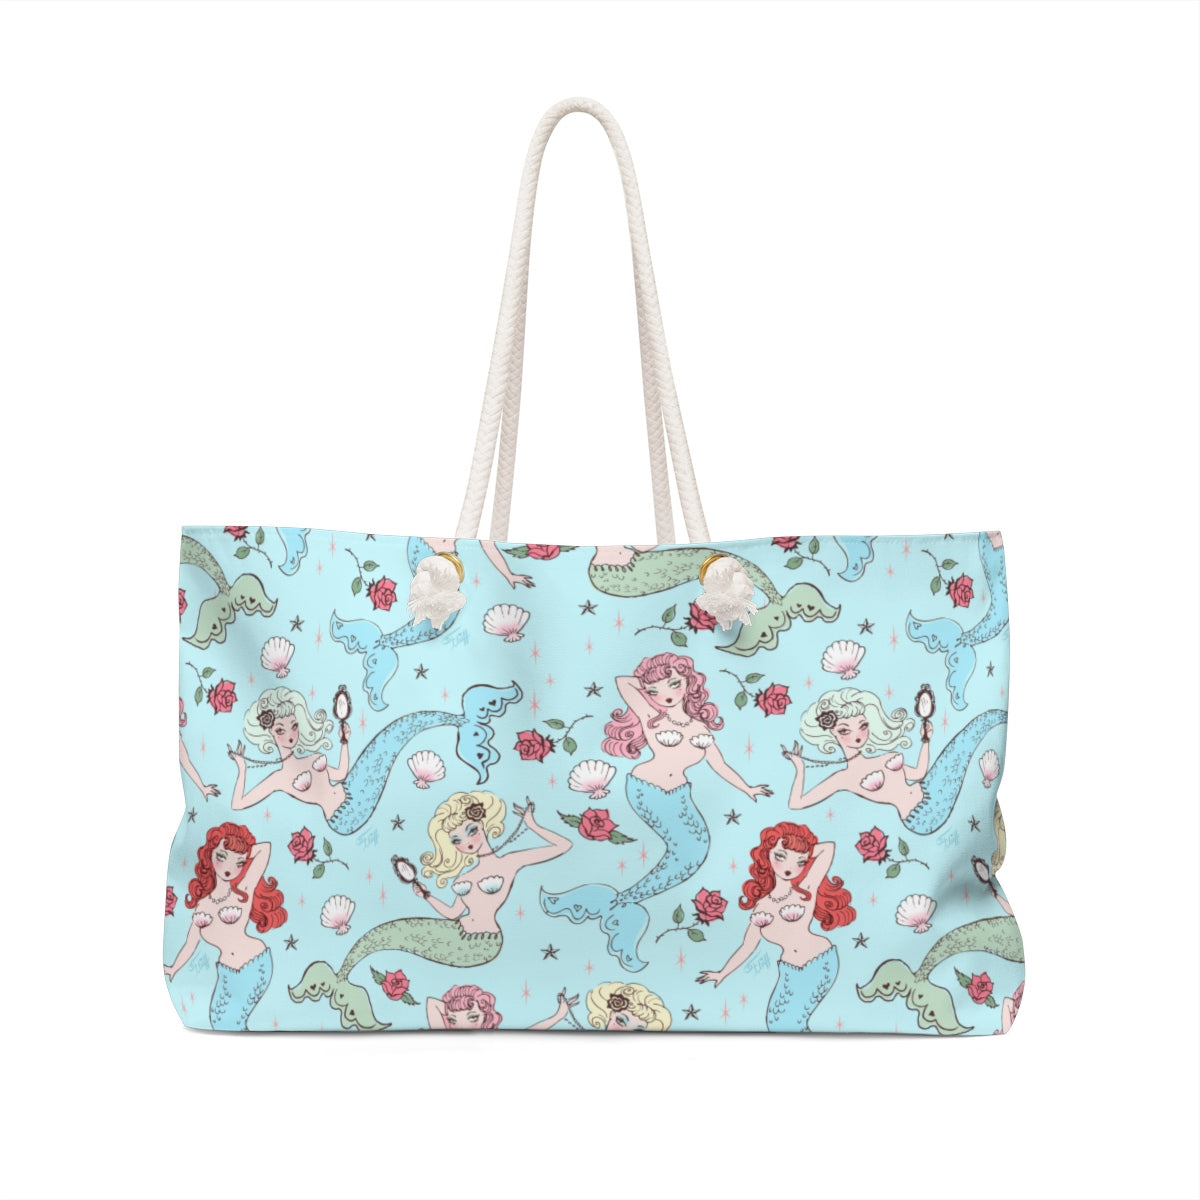 Mermaids and Roses on Aqua • Weekender Bag